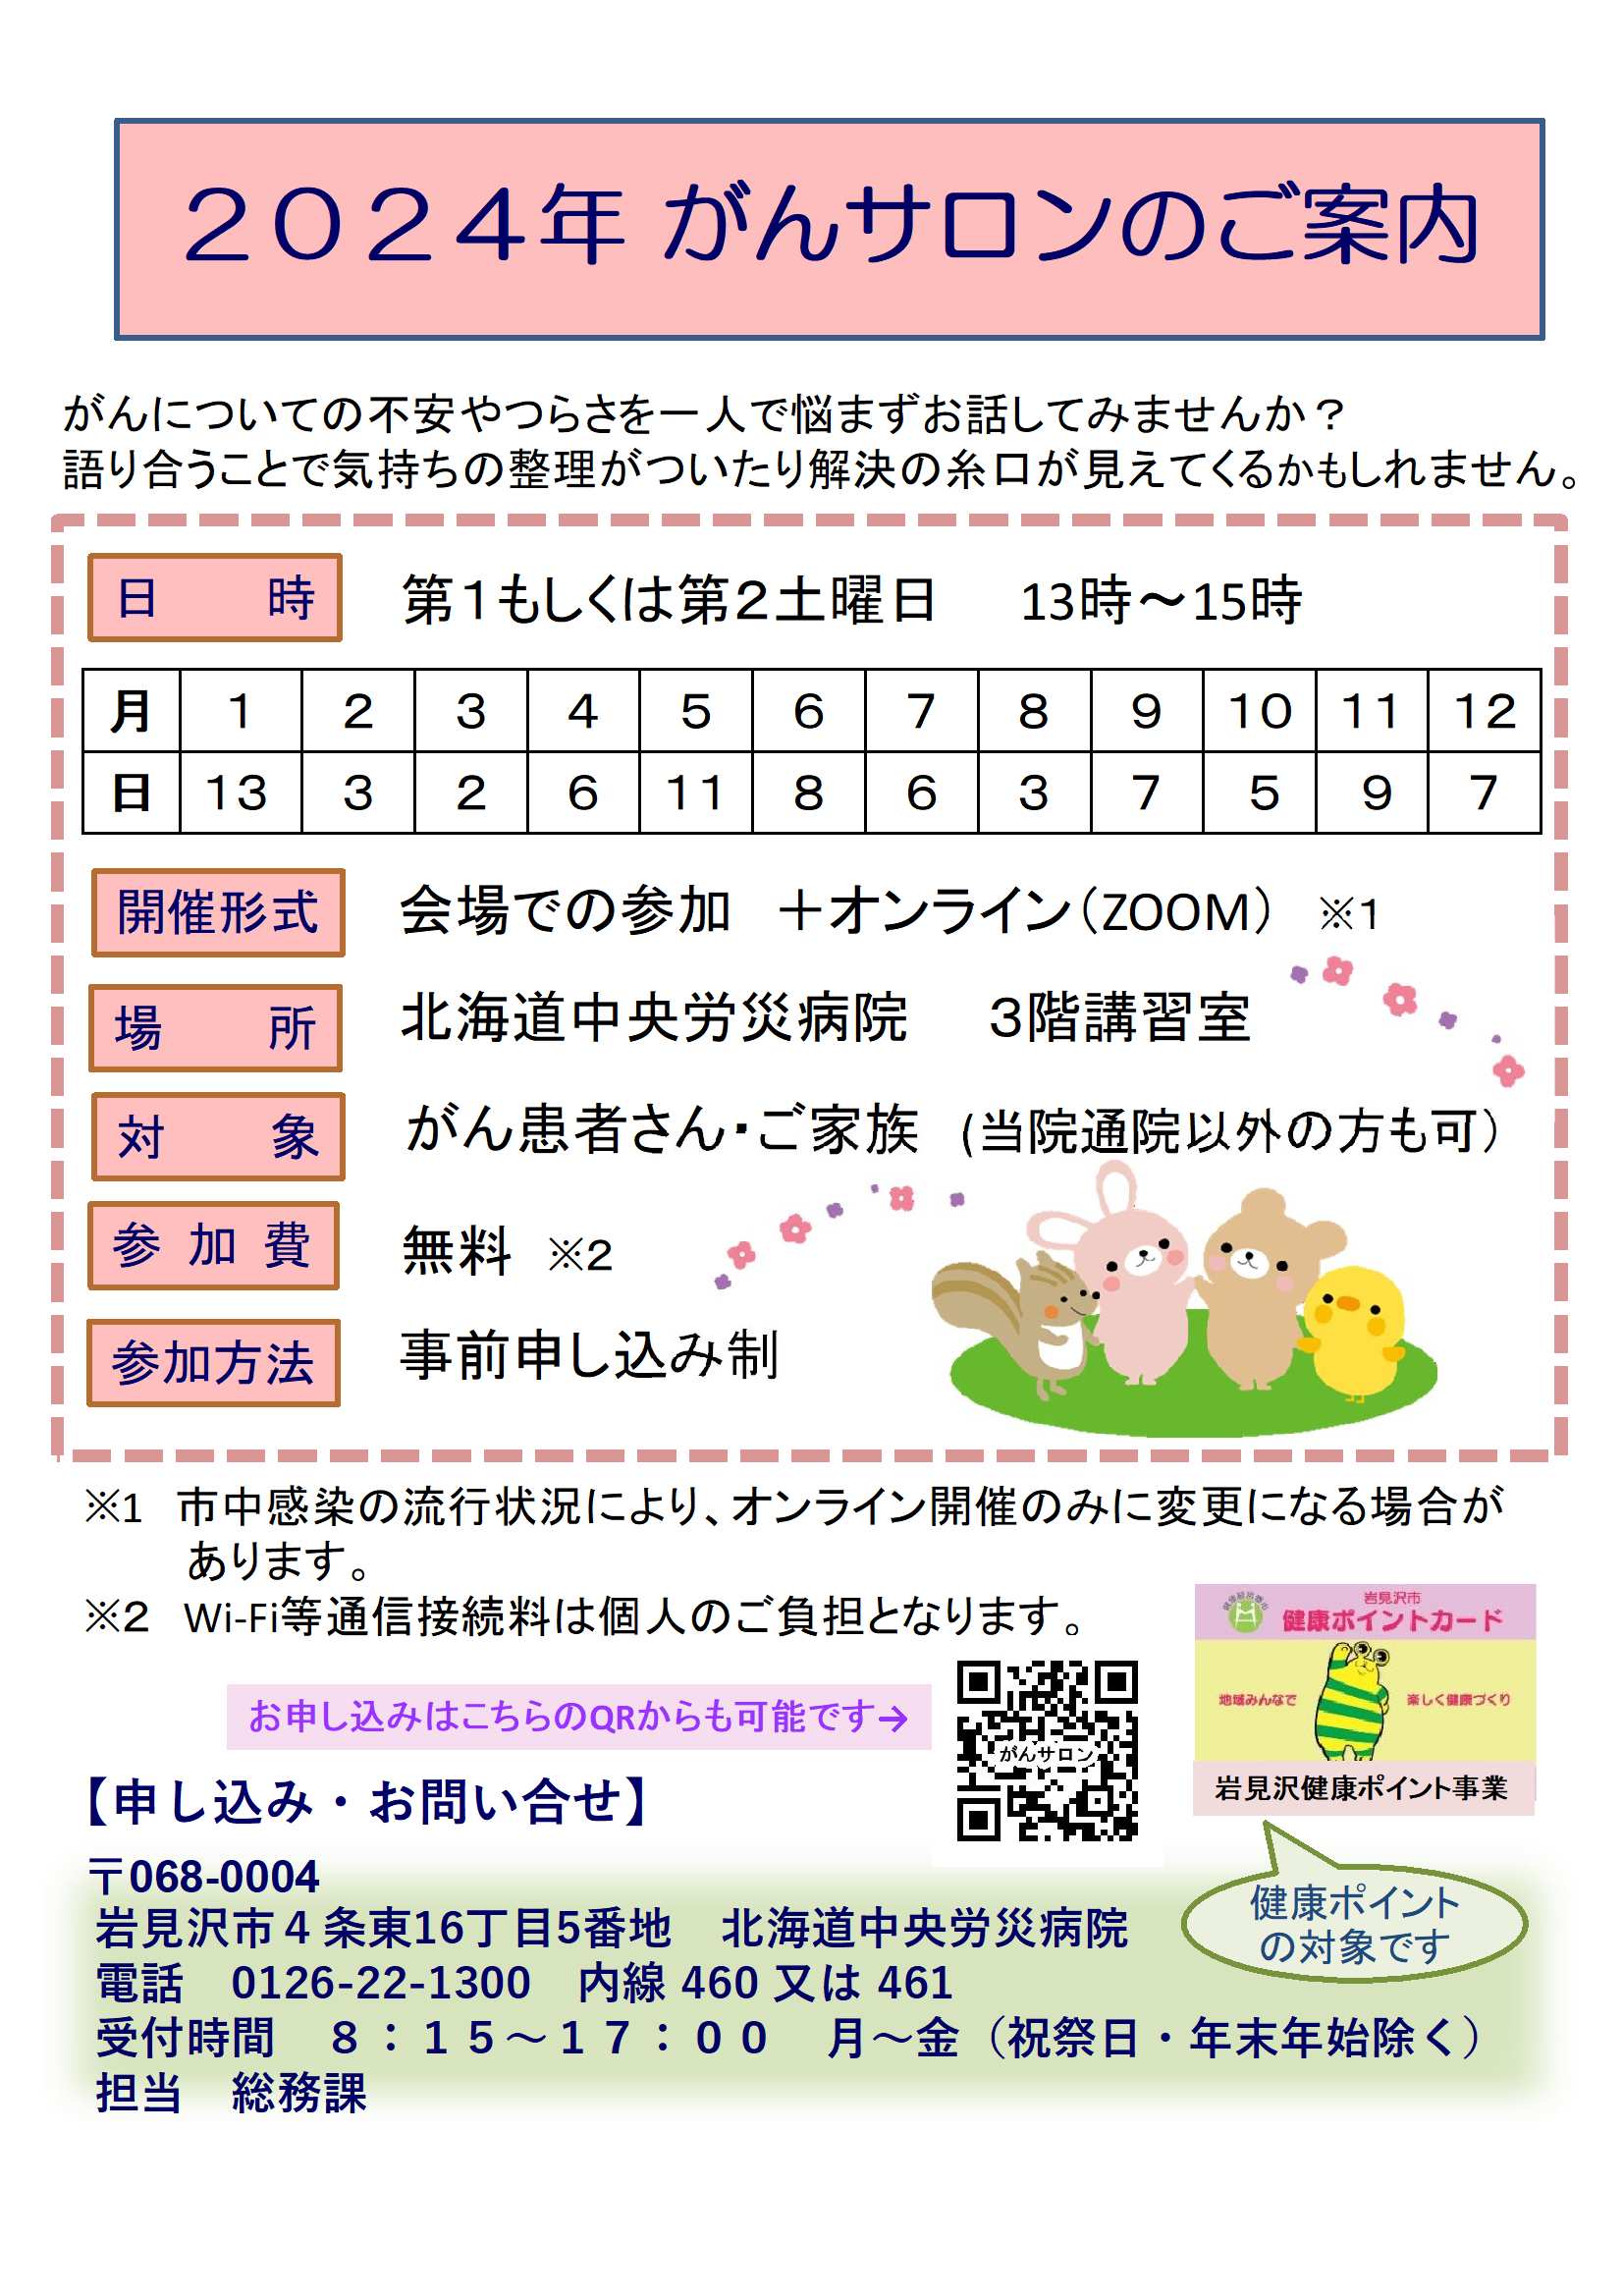 6月修正済みがんサロンポスター(2024.1~12 )QR入り(HP用修正R6.7).jpg